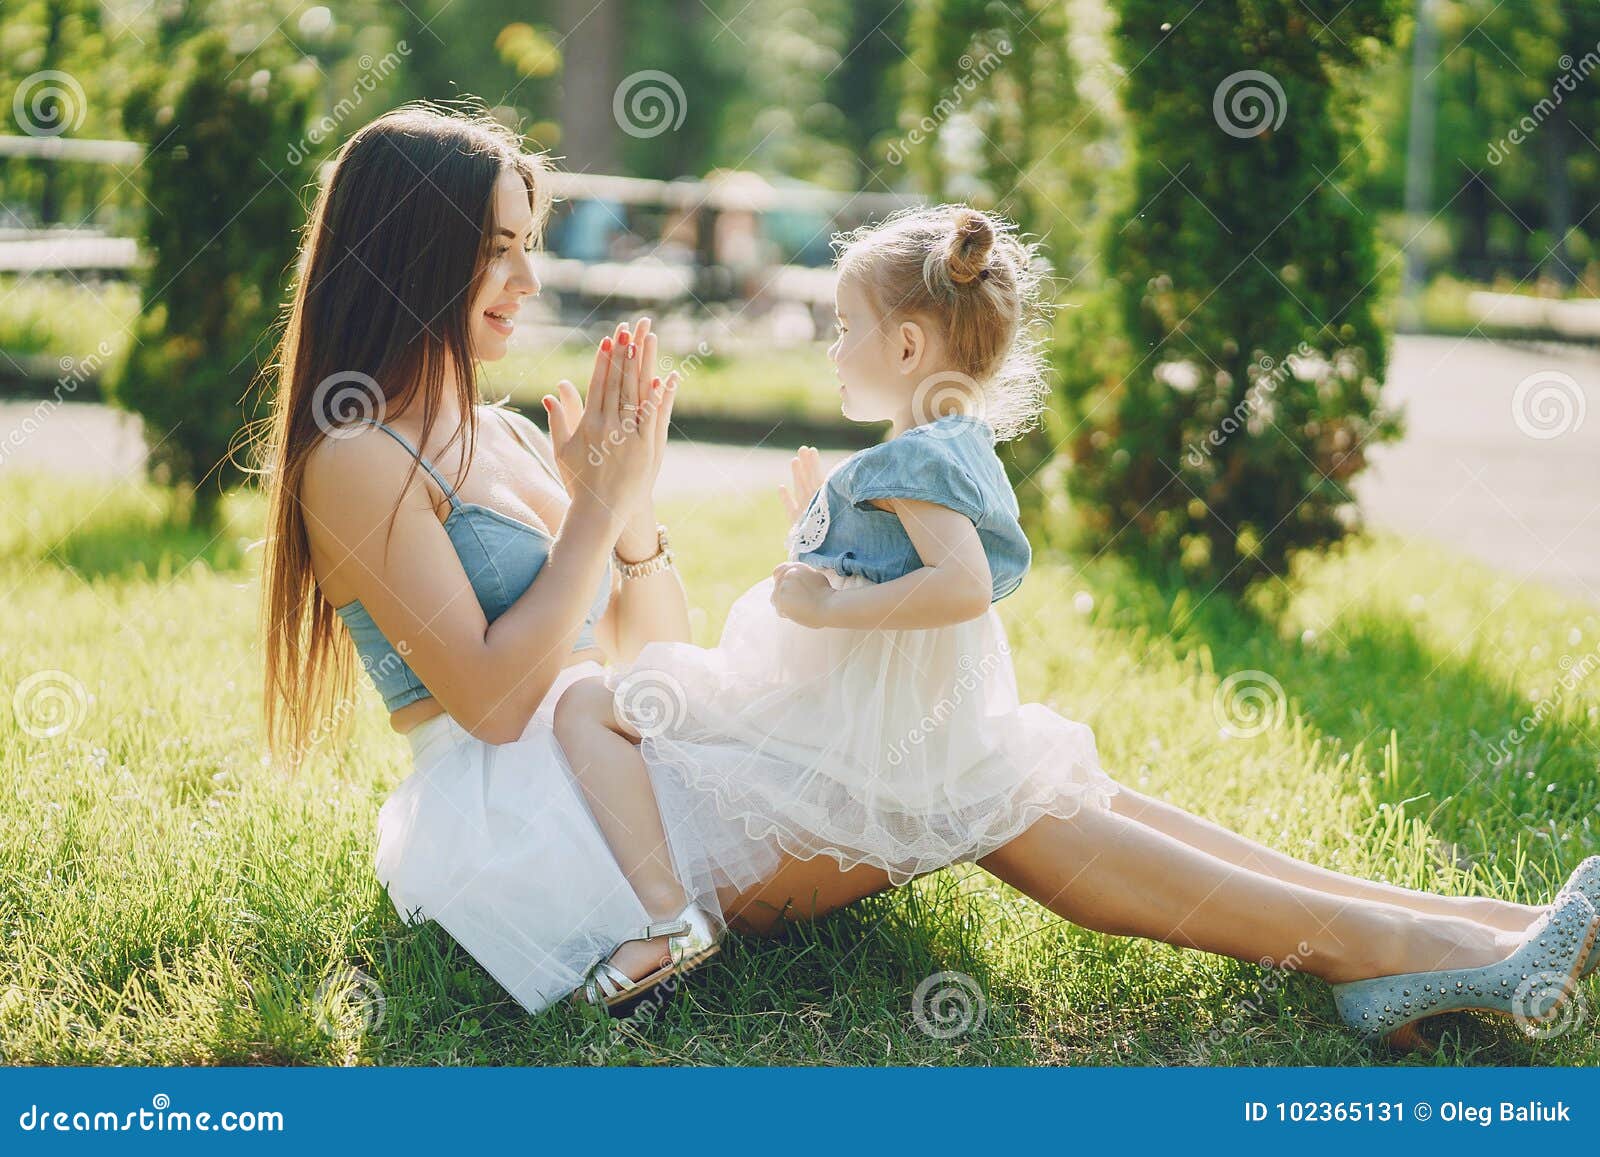 Мама дочка красавицы. Мама и дочка. Фотосессия мамы с маленькой дочкой. Стильная мама с ребенком. Фотосессия с дочкой на природе.